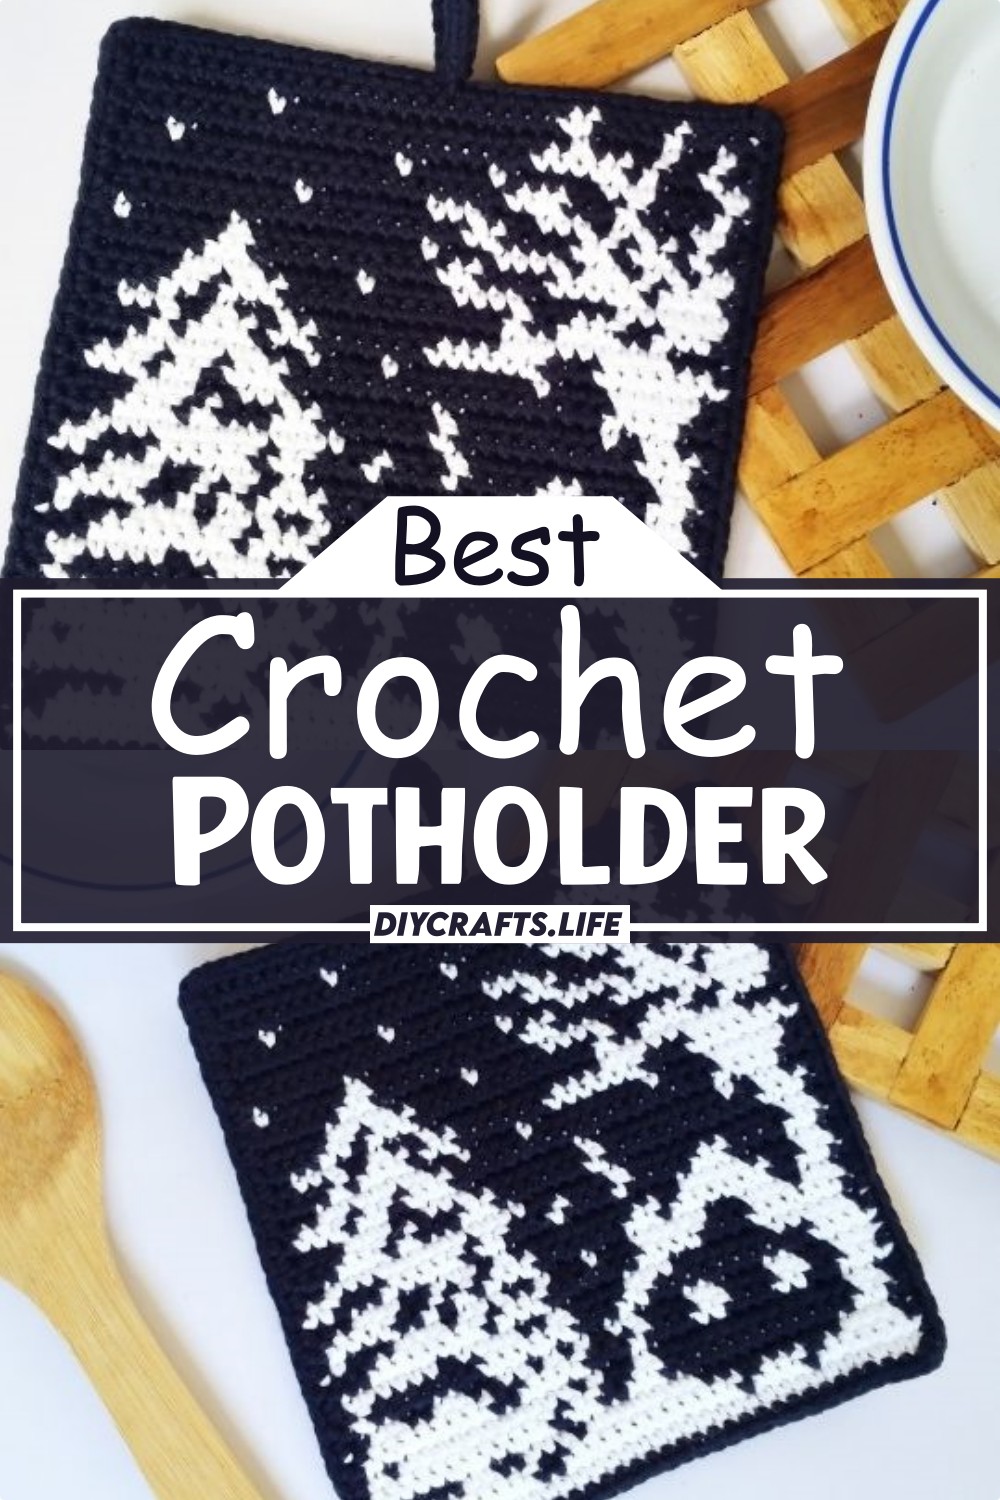  The Best Crochet Potholder Pattern